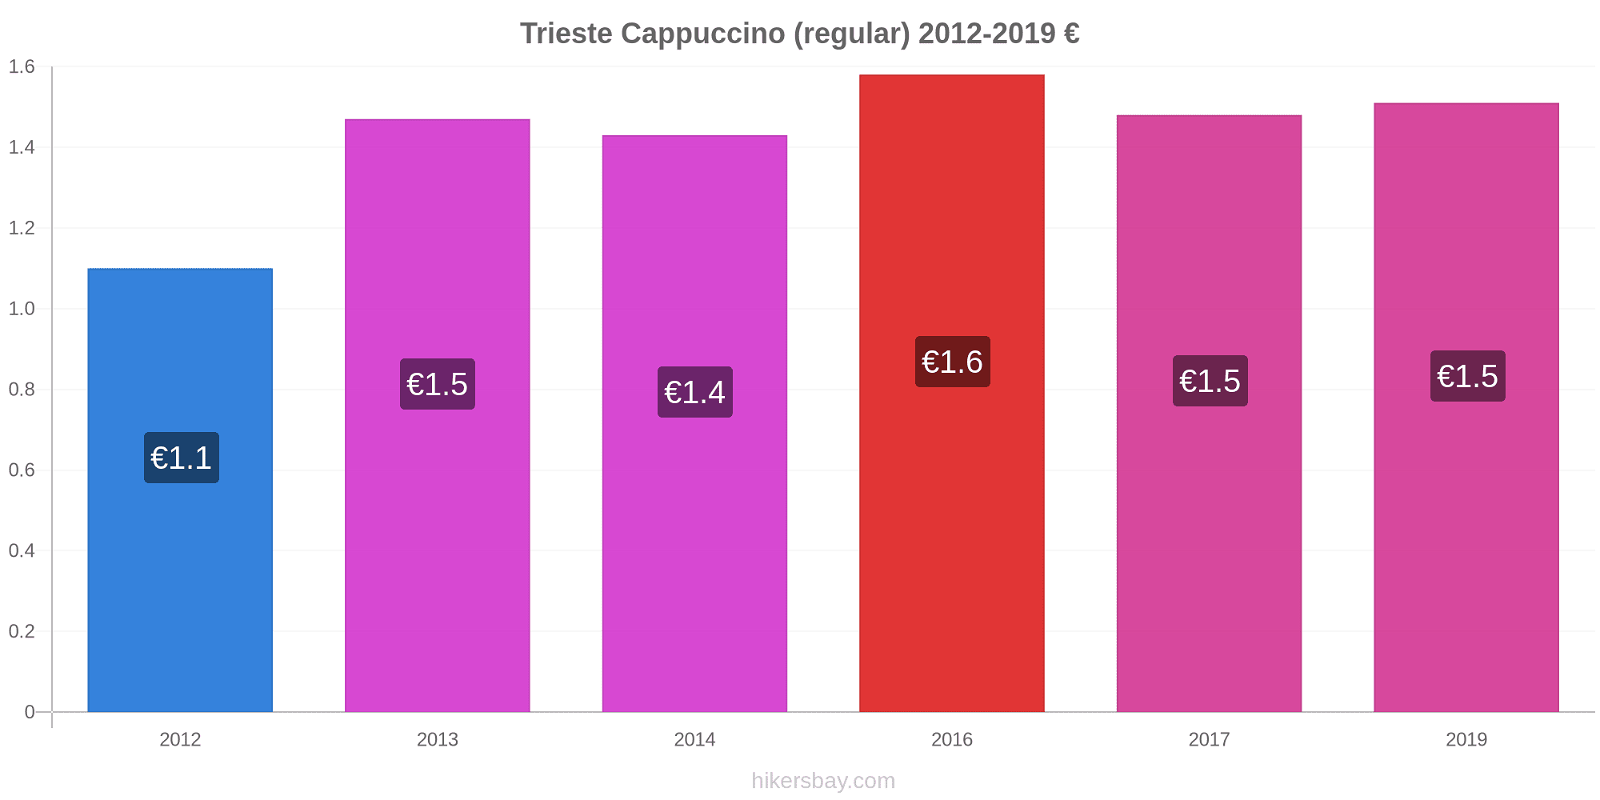 Trieste price changes Cappuccino (regular) hikersbay.com